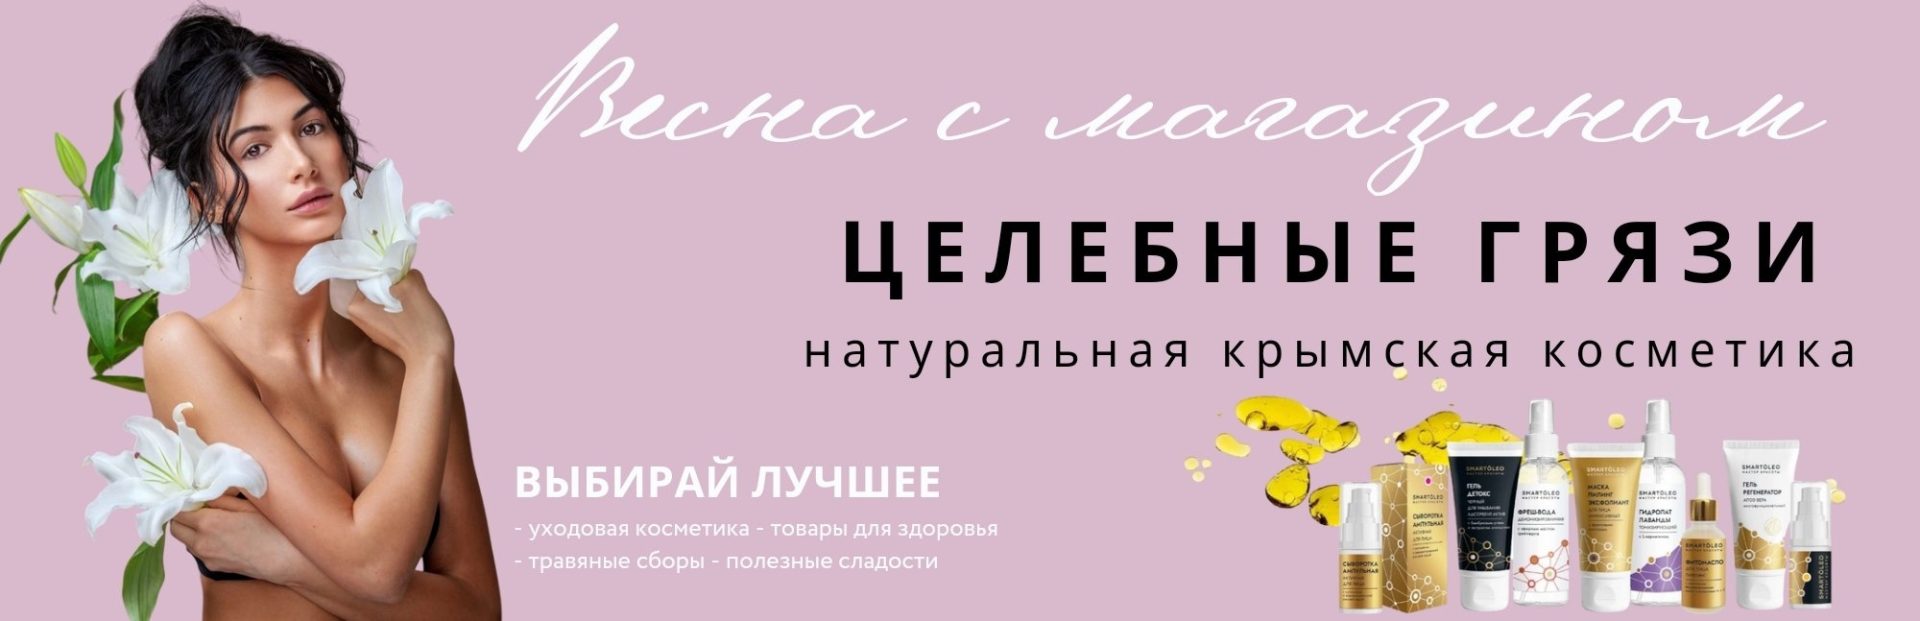 Ваш магазин крымской косметики